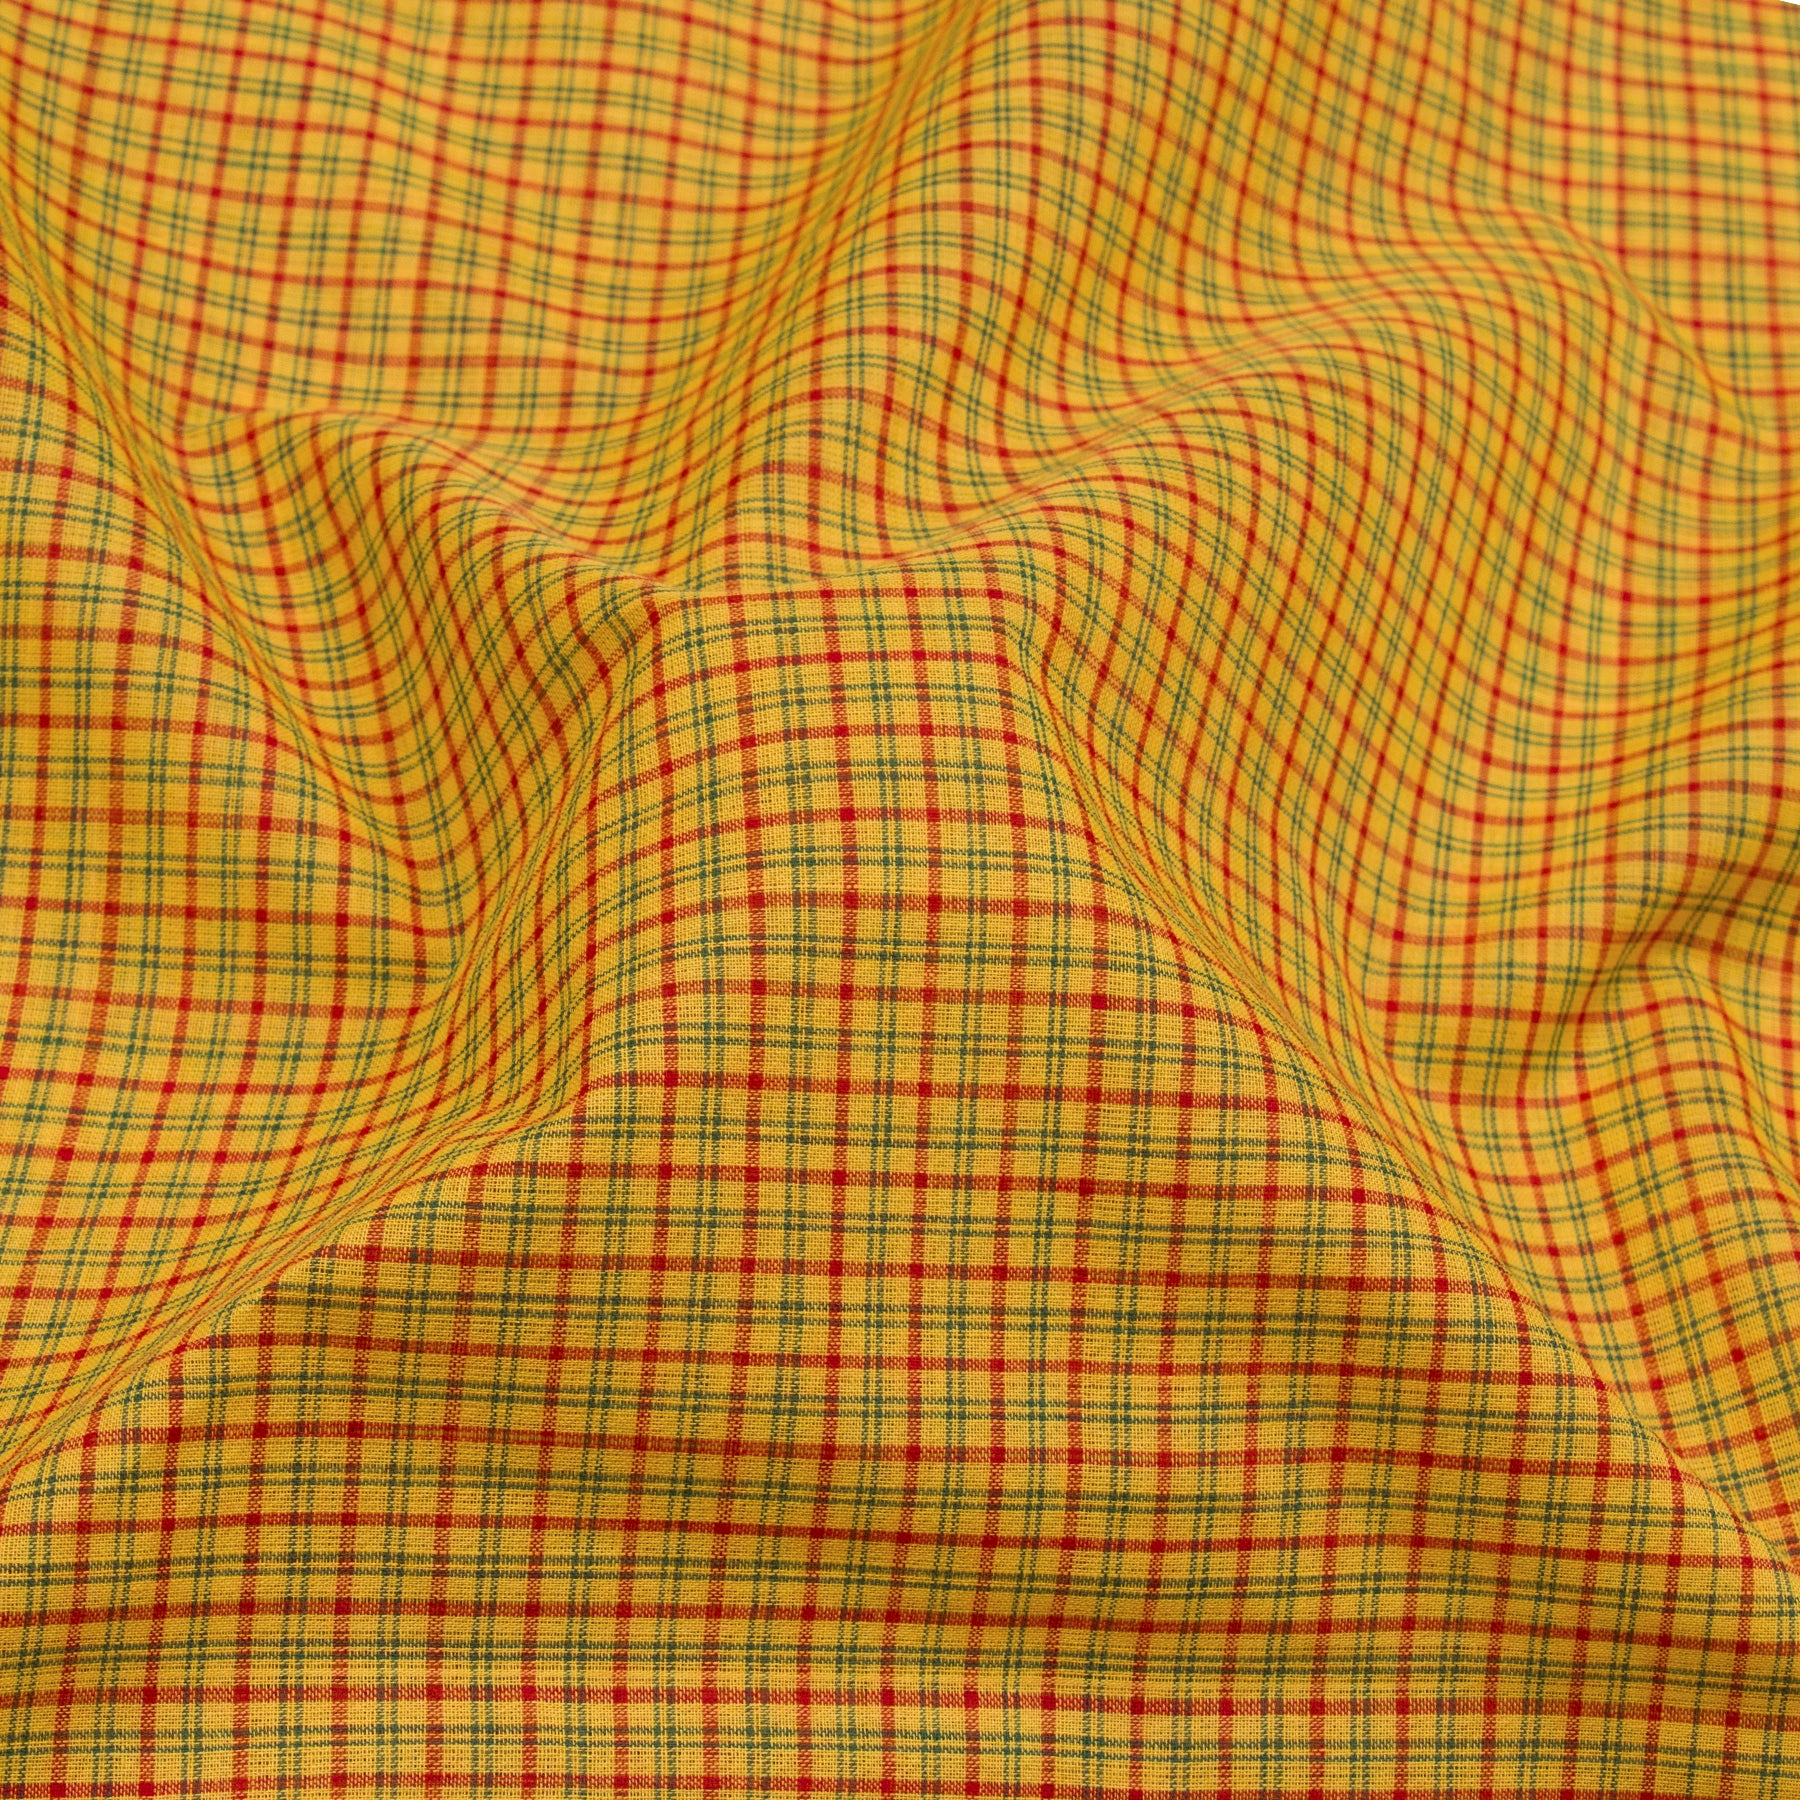 Kanakavalli Mangalgiri Cotton Sari 23-261-HS003-04165 - Fabric View